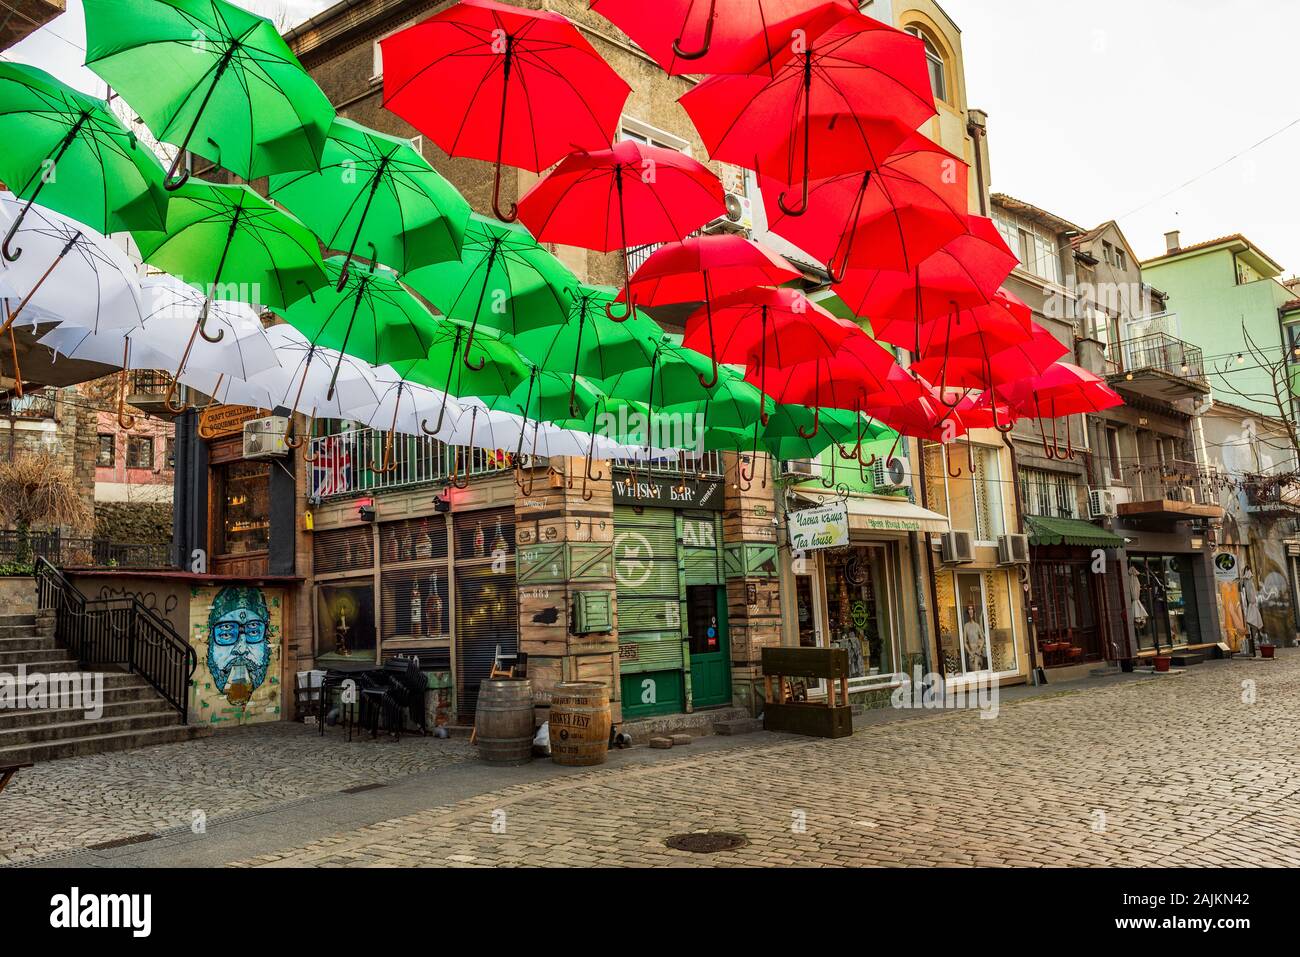 Rue et maisons de la ville de district Kapana, Plovdiv, Bulgarie. Parasols colorés avec blanc, vert, rouge des couleurs de drapeau bulgare Banque D'Images